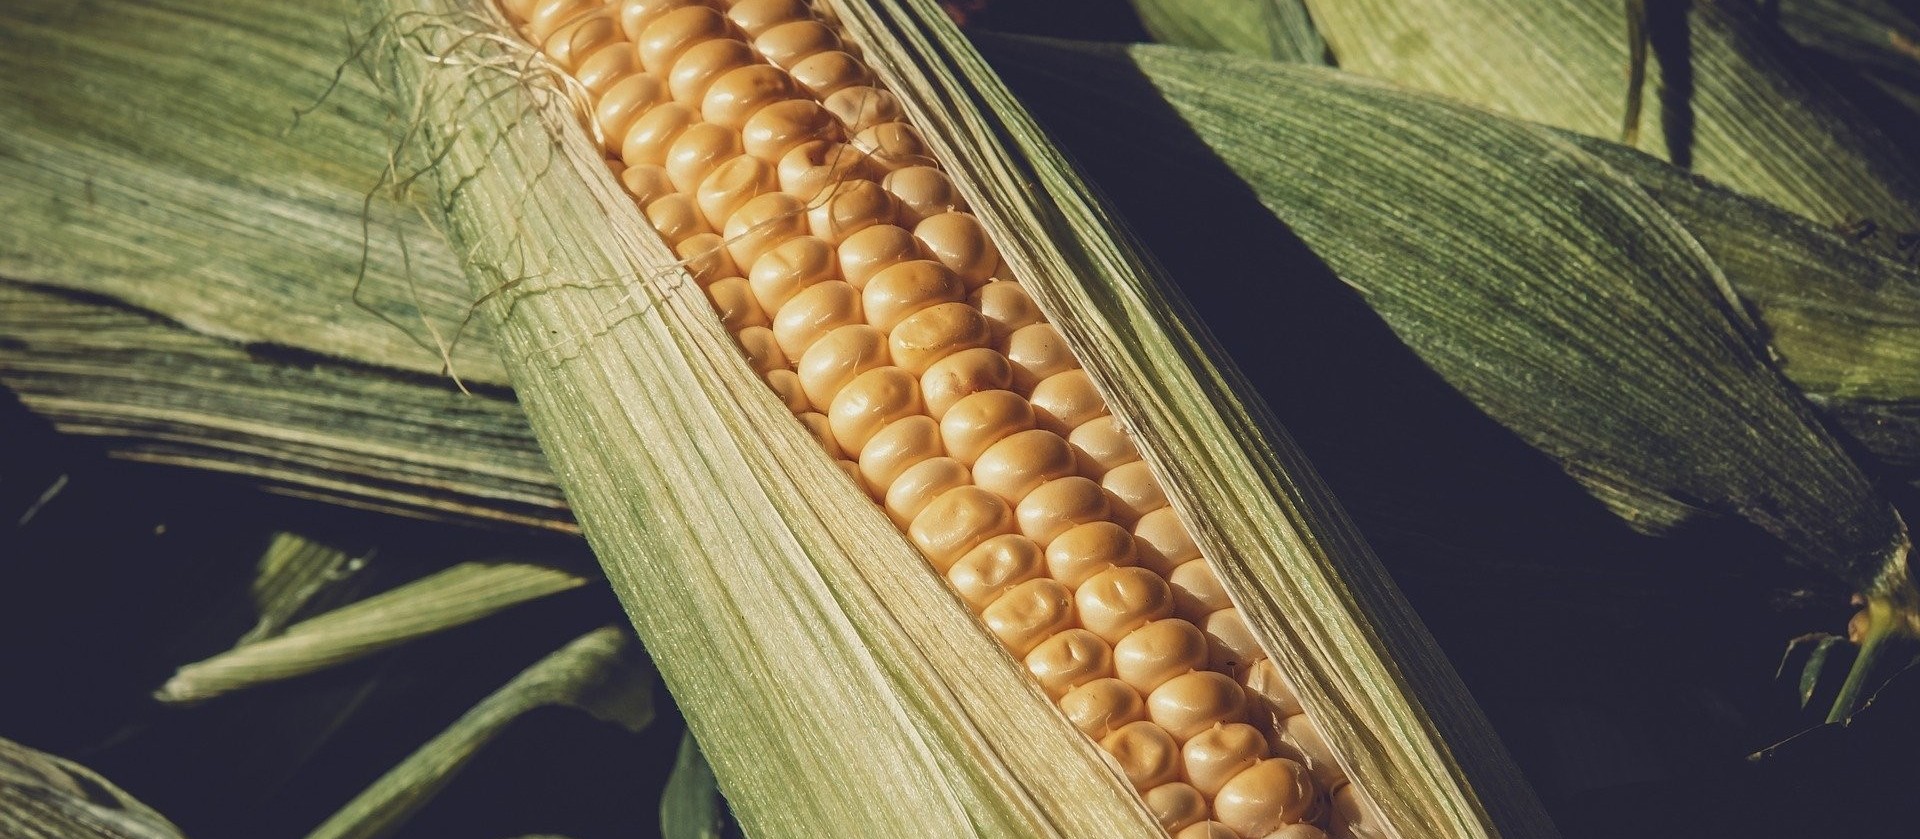 Colheita da safra de verão de milho atinge 97% da área estimada